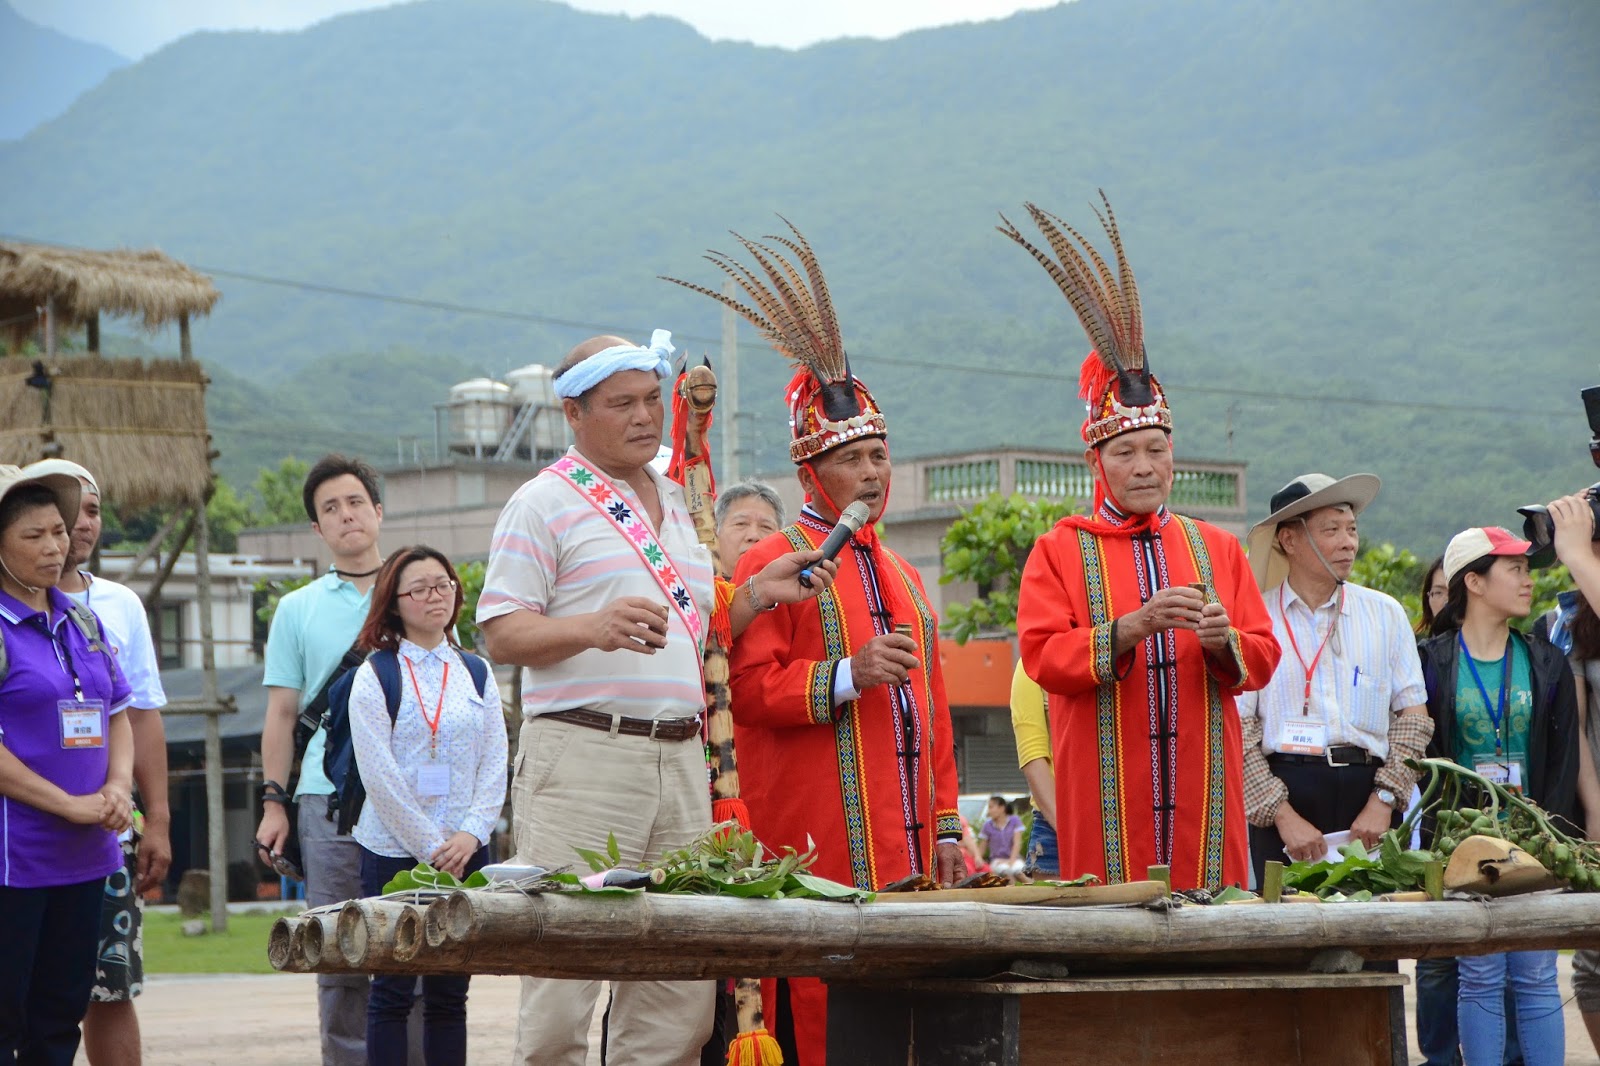 權杖/荷蘭國王登基/台灣原住民部落頭目擁有象徵統治權力的權杖